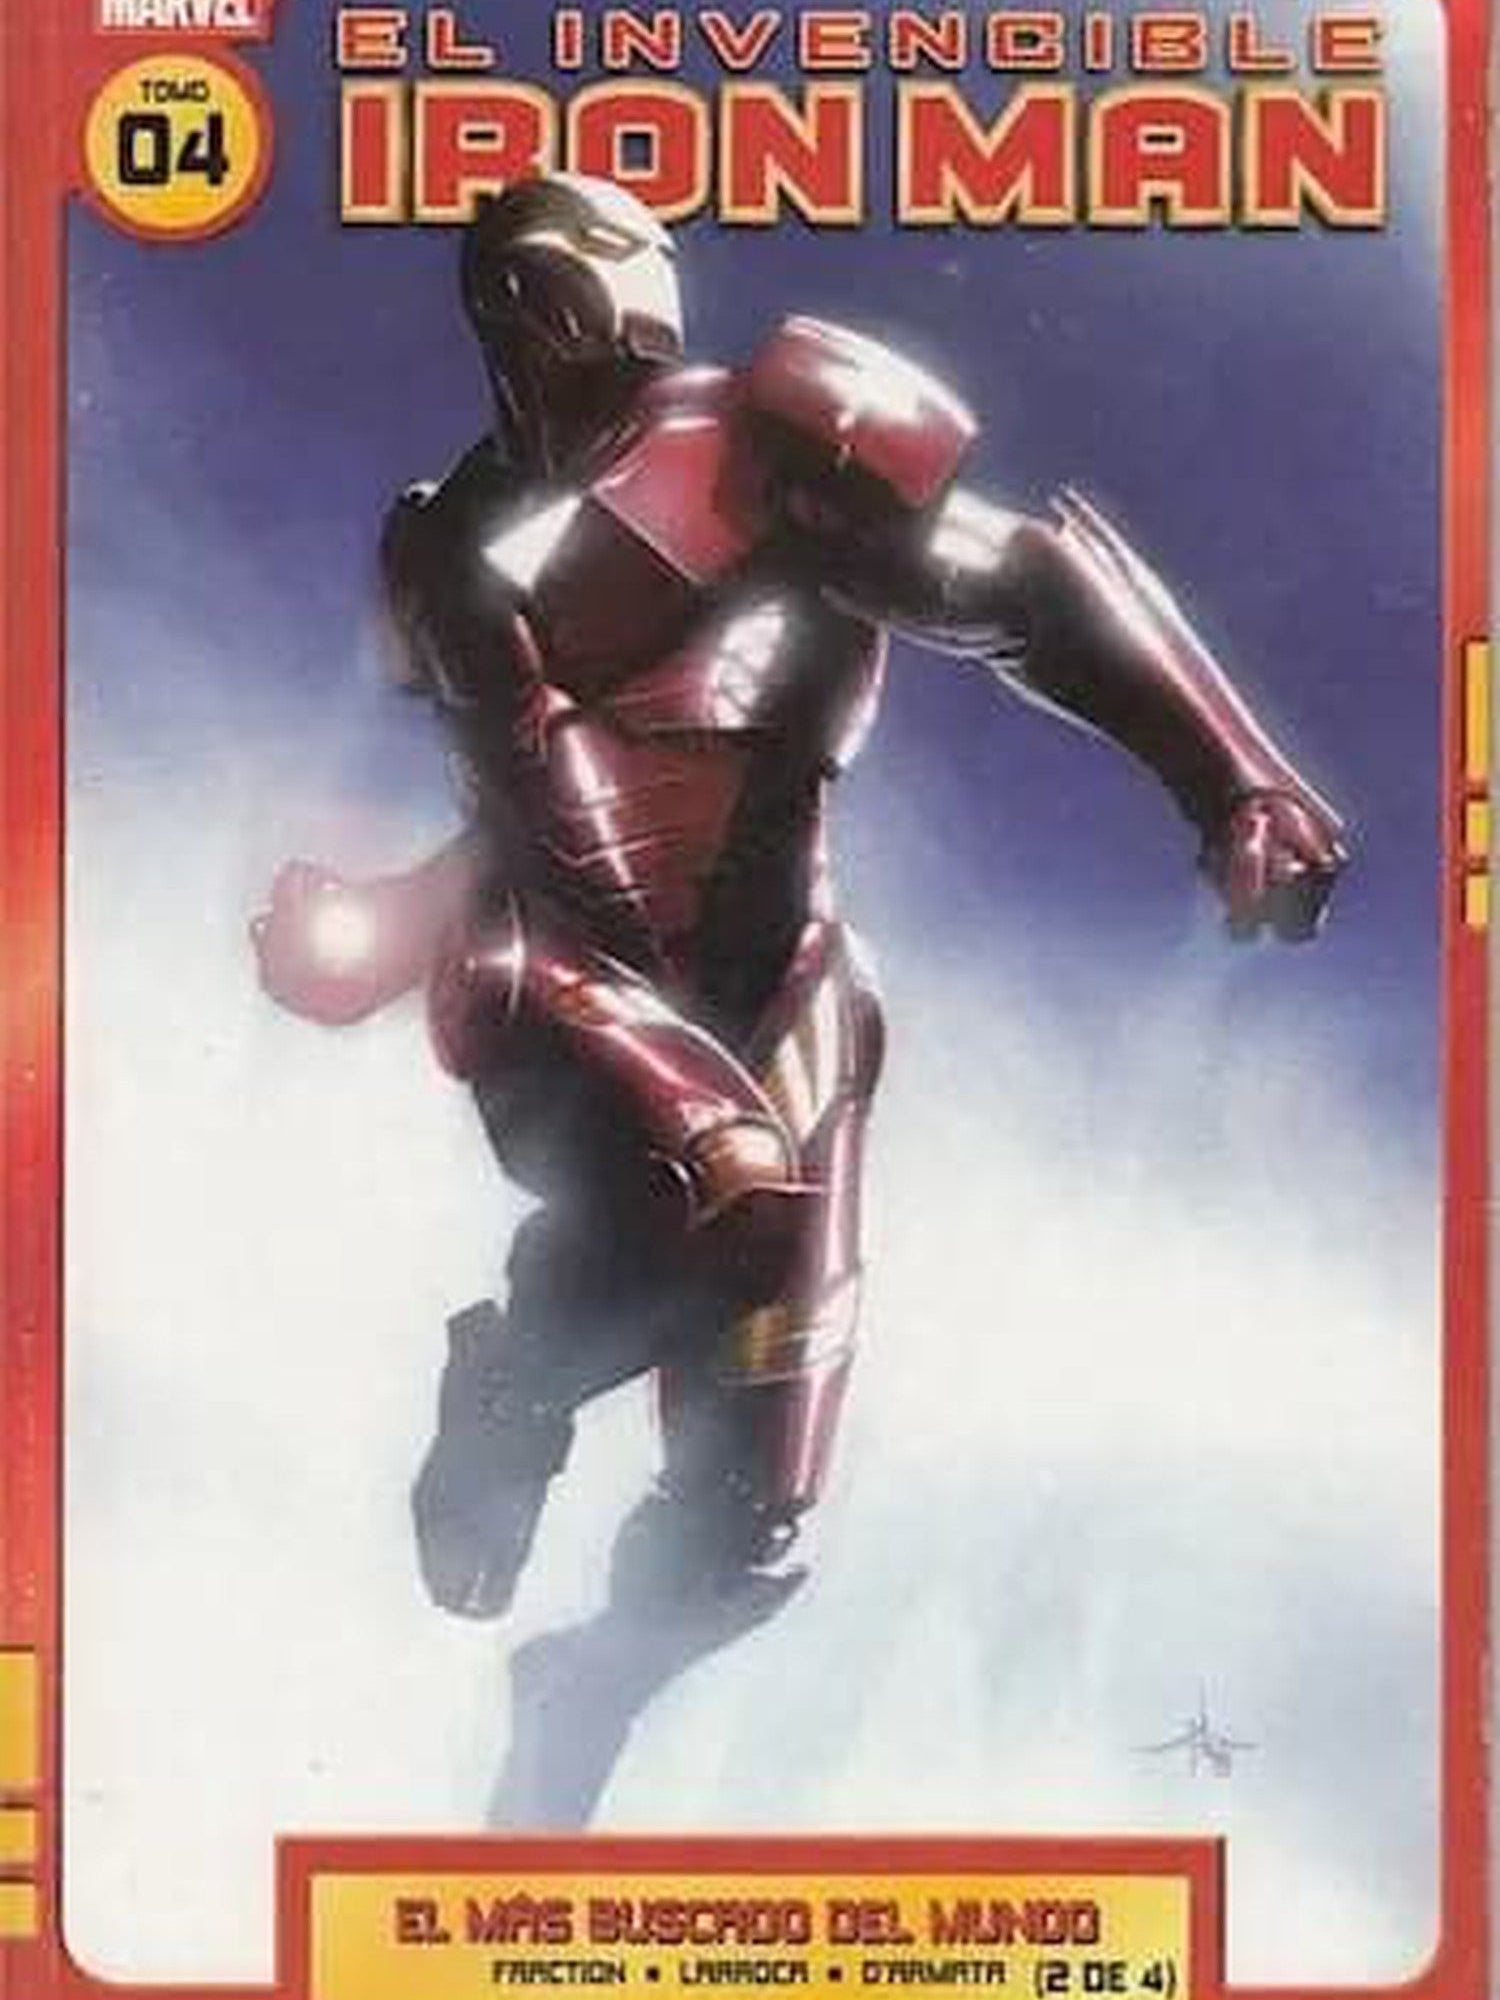 El Invencible Iron Man: El Más Buscado del Mundo - Tomo 4 Clarín ENcuadrocomics